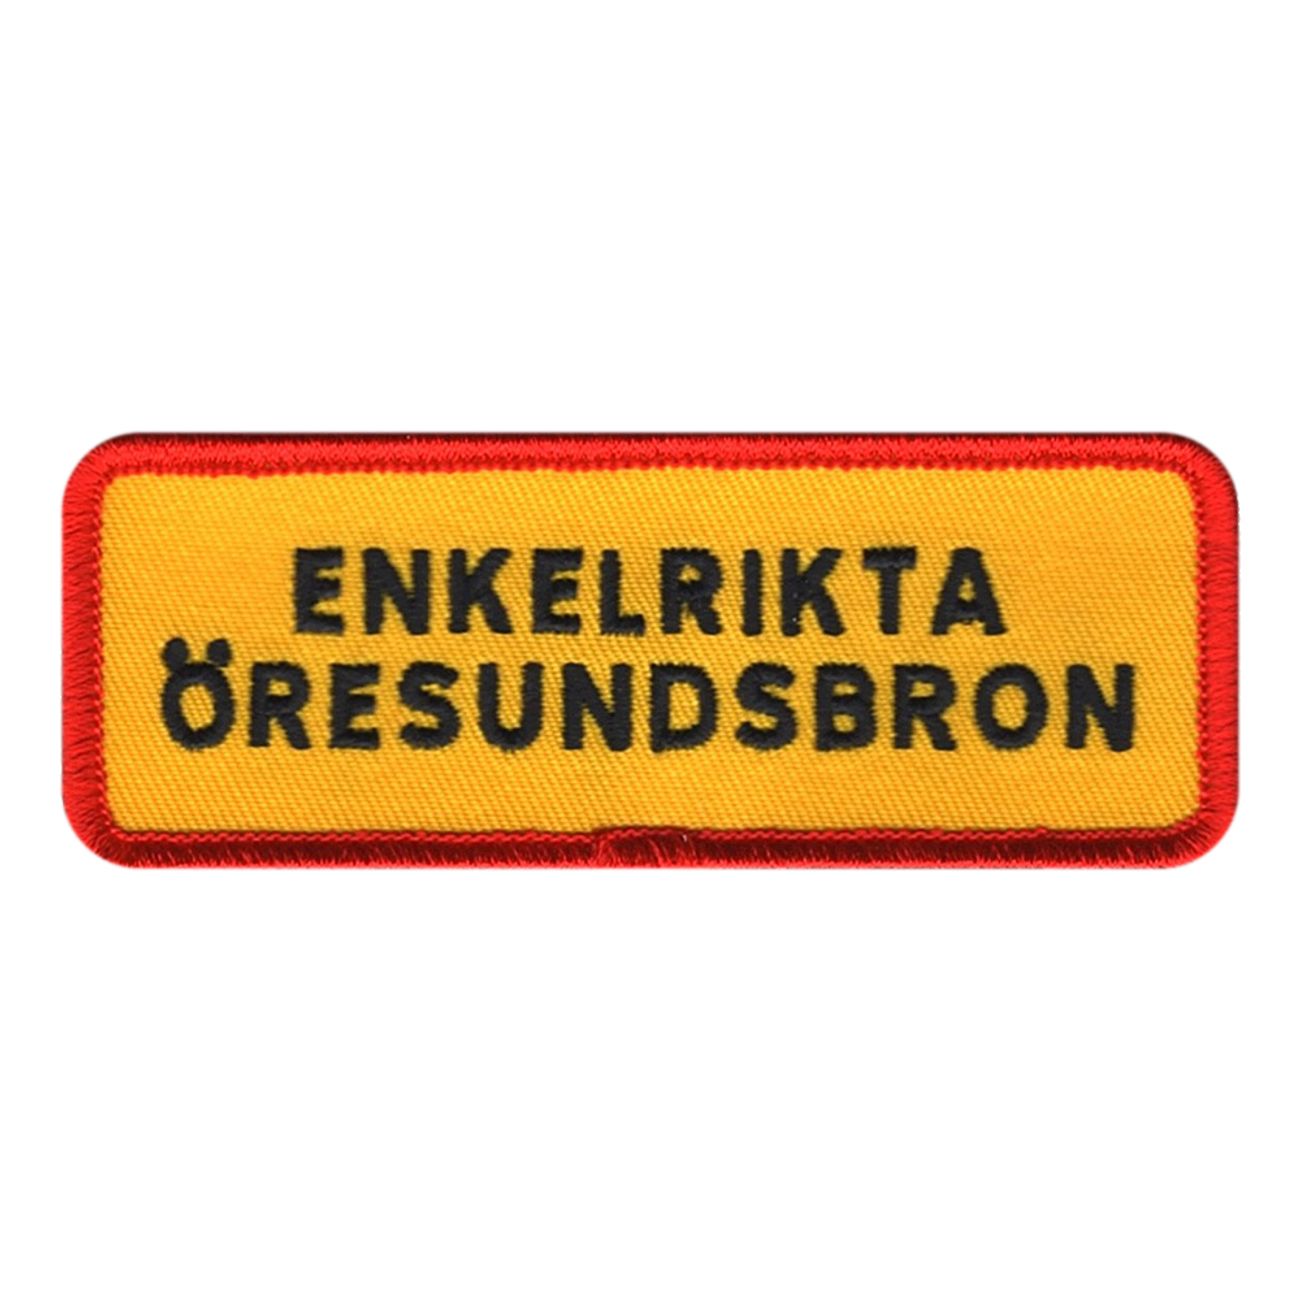 enkelrikta-oresundsbron-tygmarke-100621-1